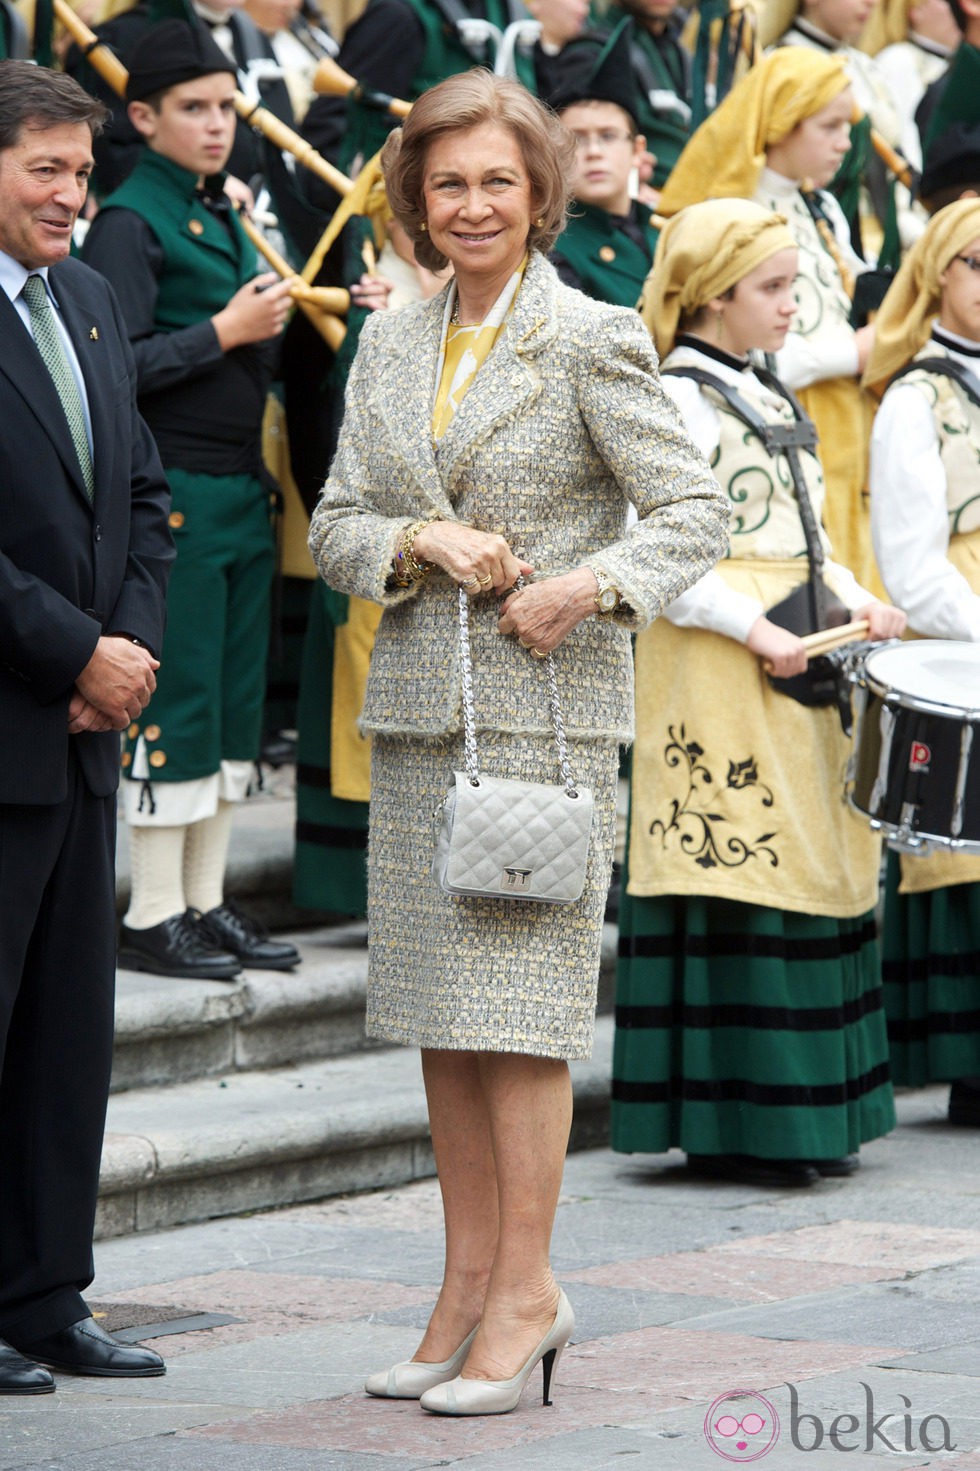 La Reina Sofía a su llegada a Oviedo para asistir a los Premios Príncipe de Asturias 2012